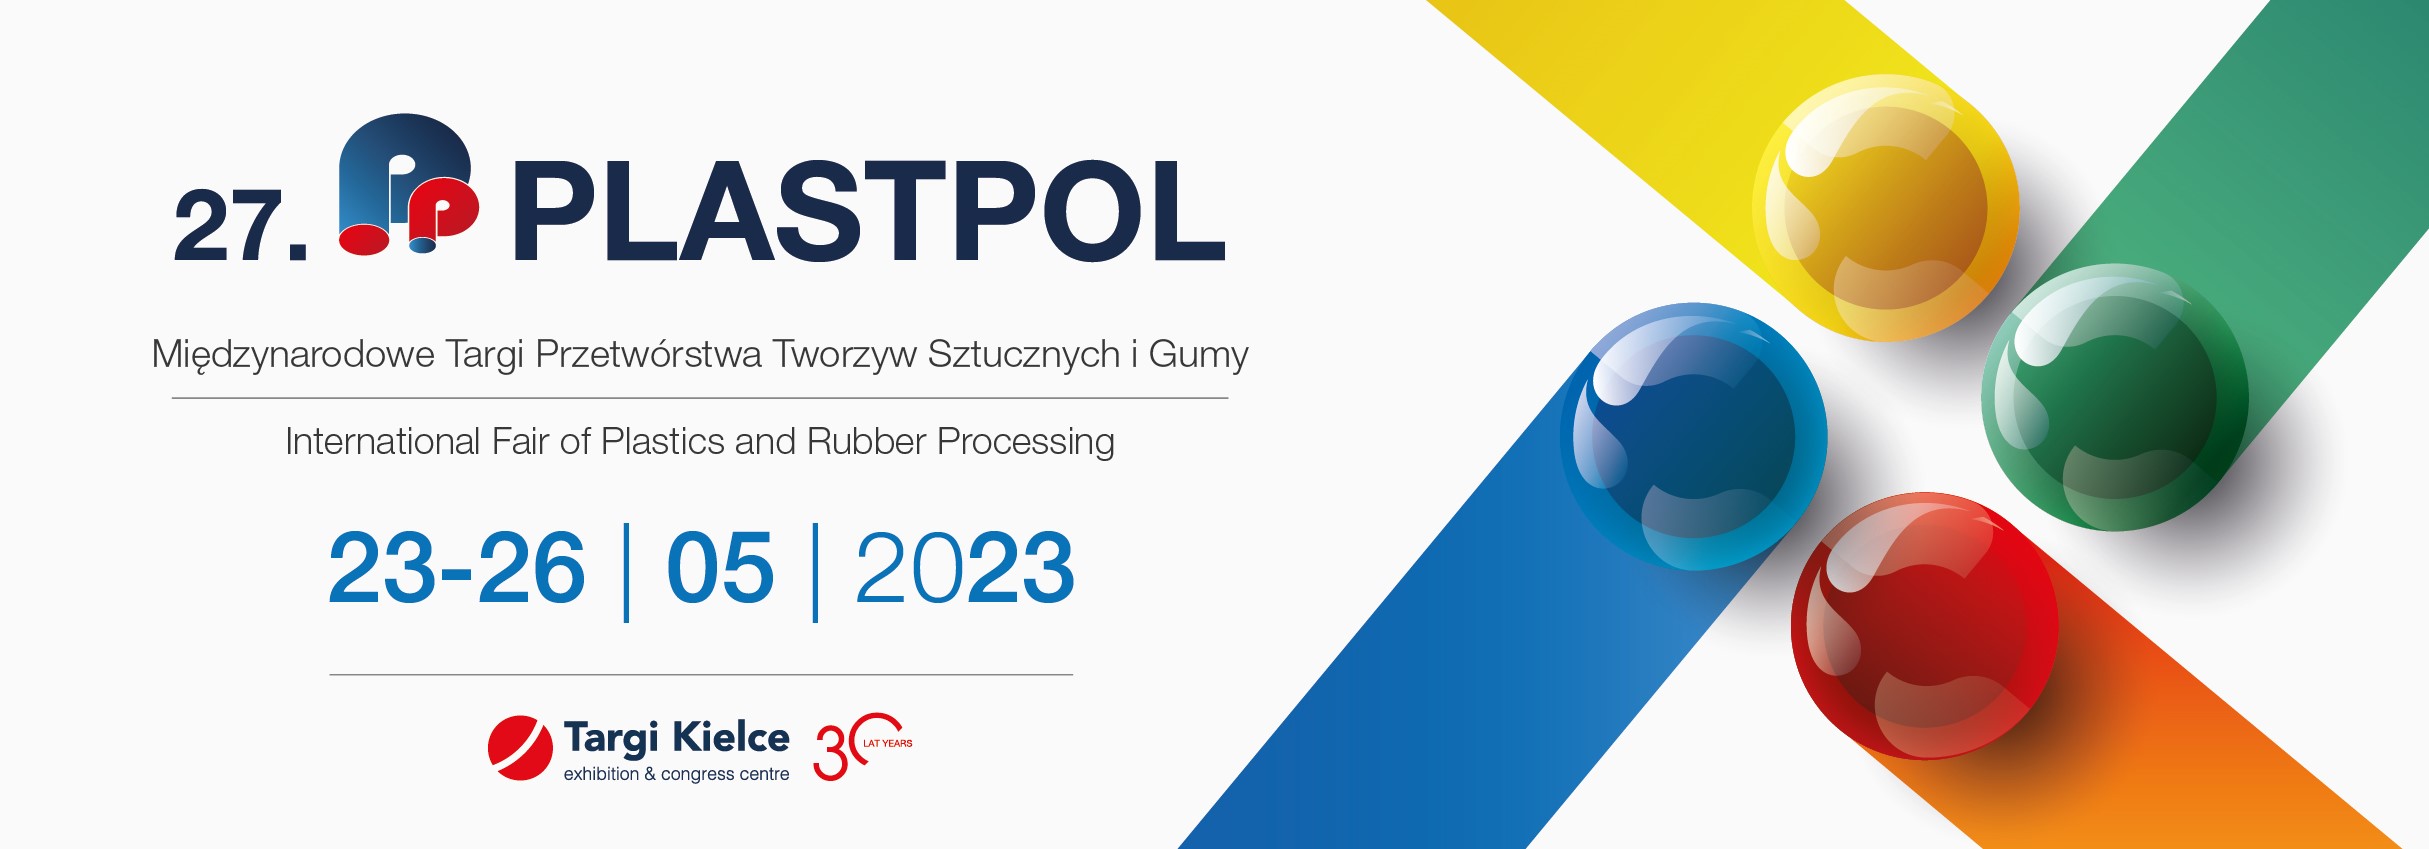 PLASTPOL-2023-zaproszenie-elektroniczne (002).jpg